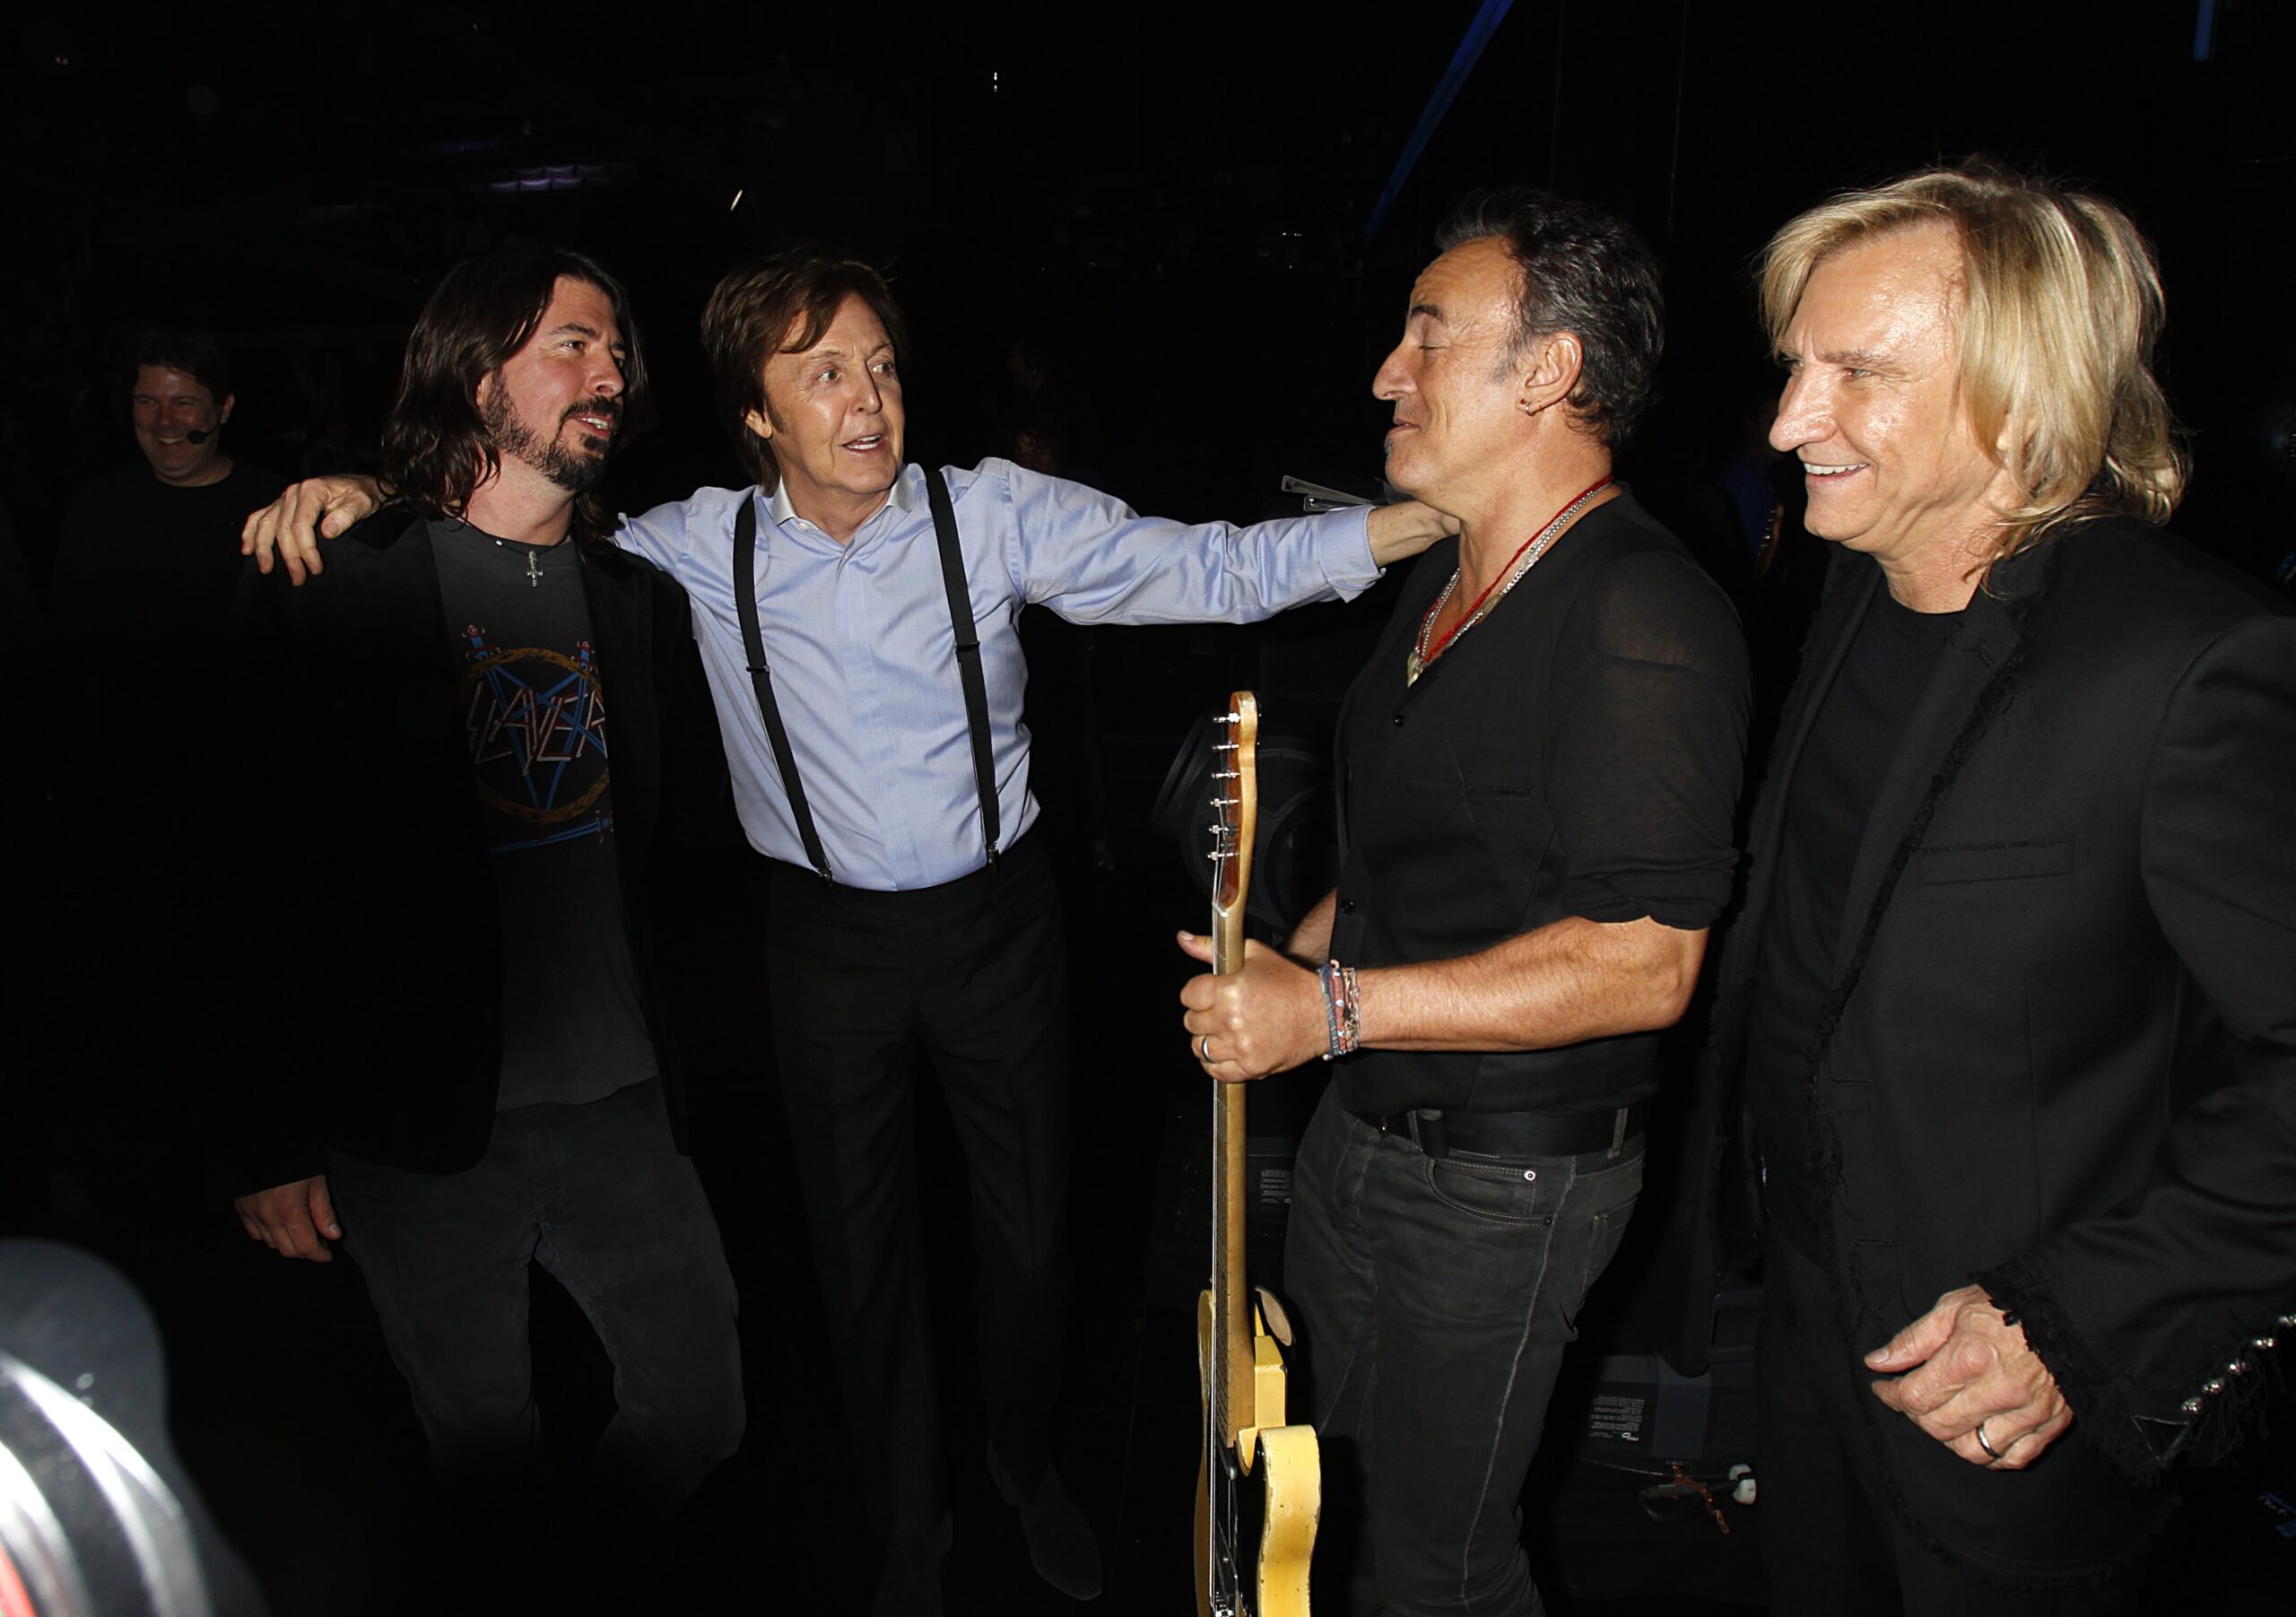 Comediante, Paul McCartney resolveu gozar com Bruce Springsteen durante homenagem